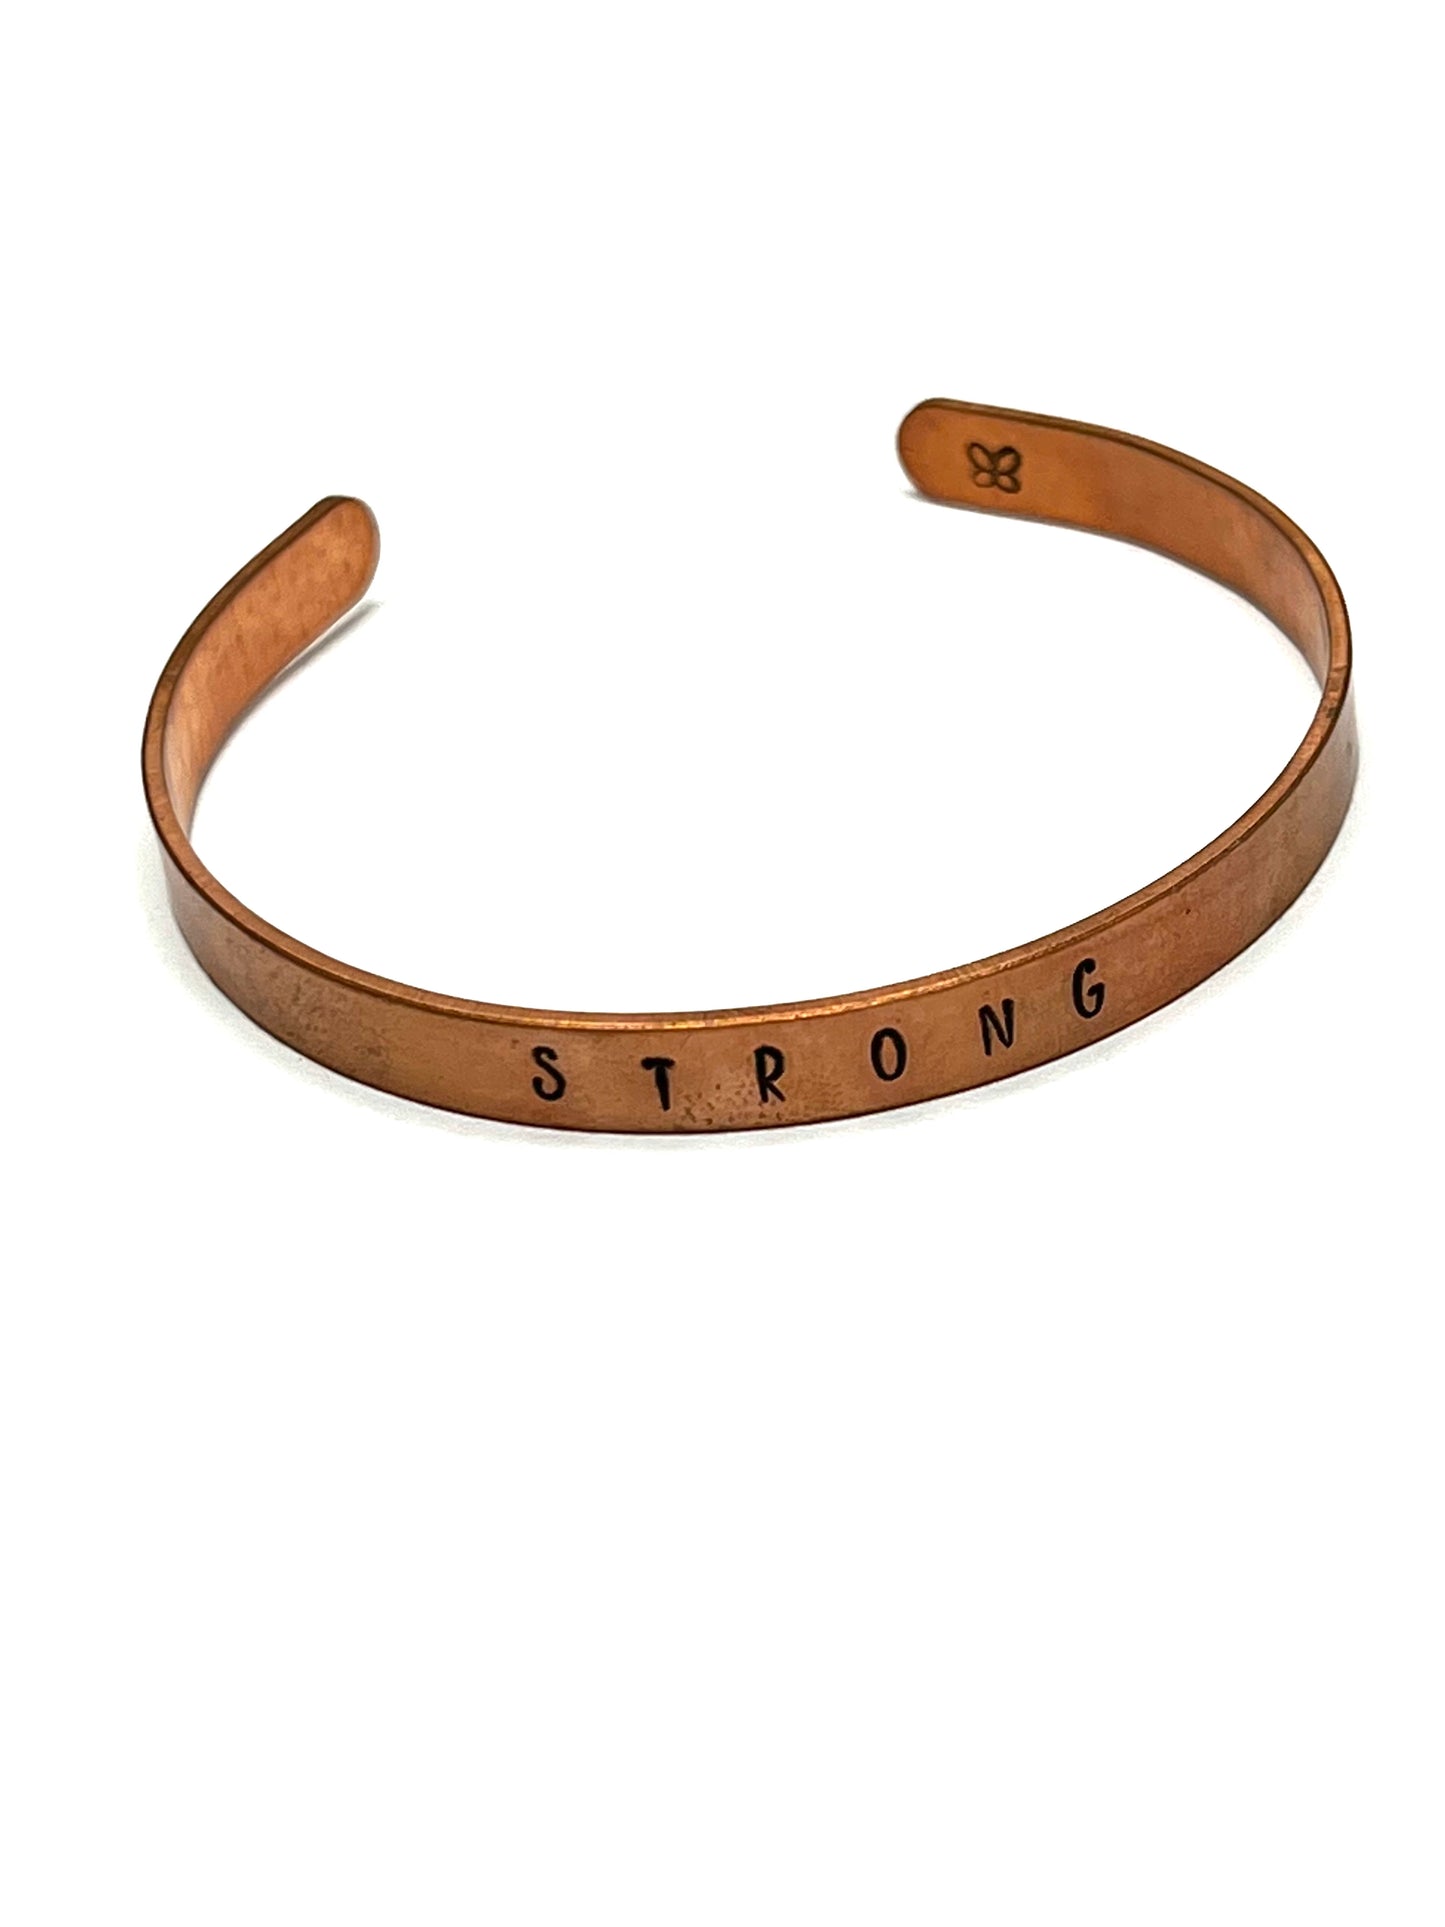 Customized Copper Cuff Bracelets